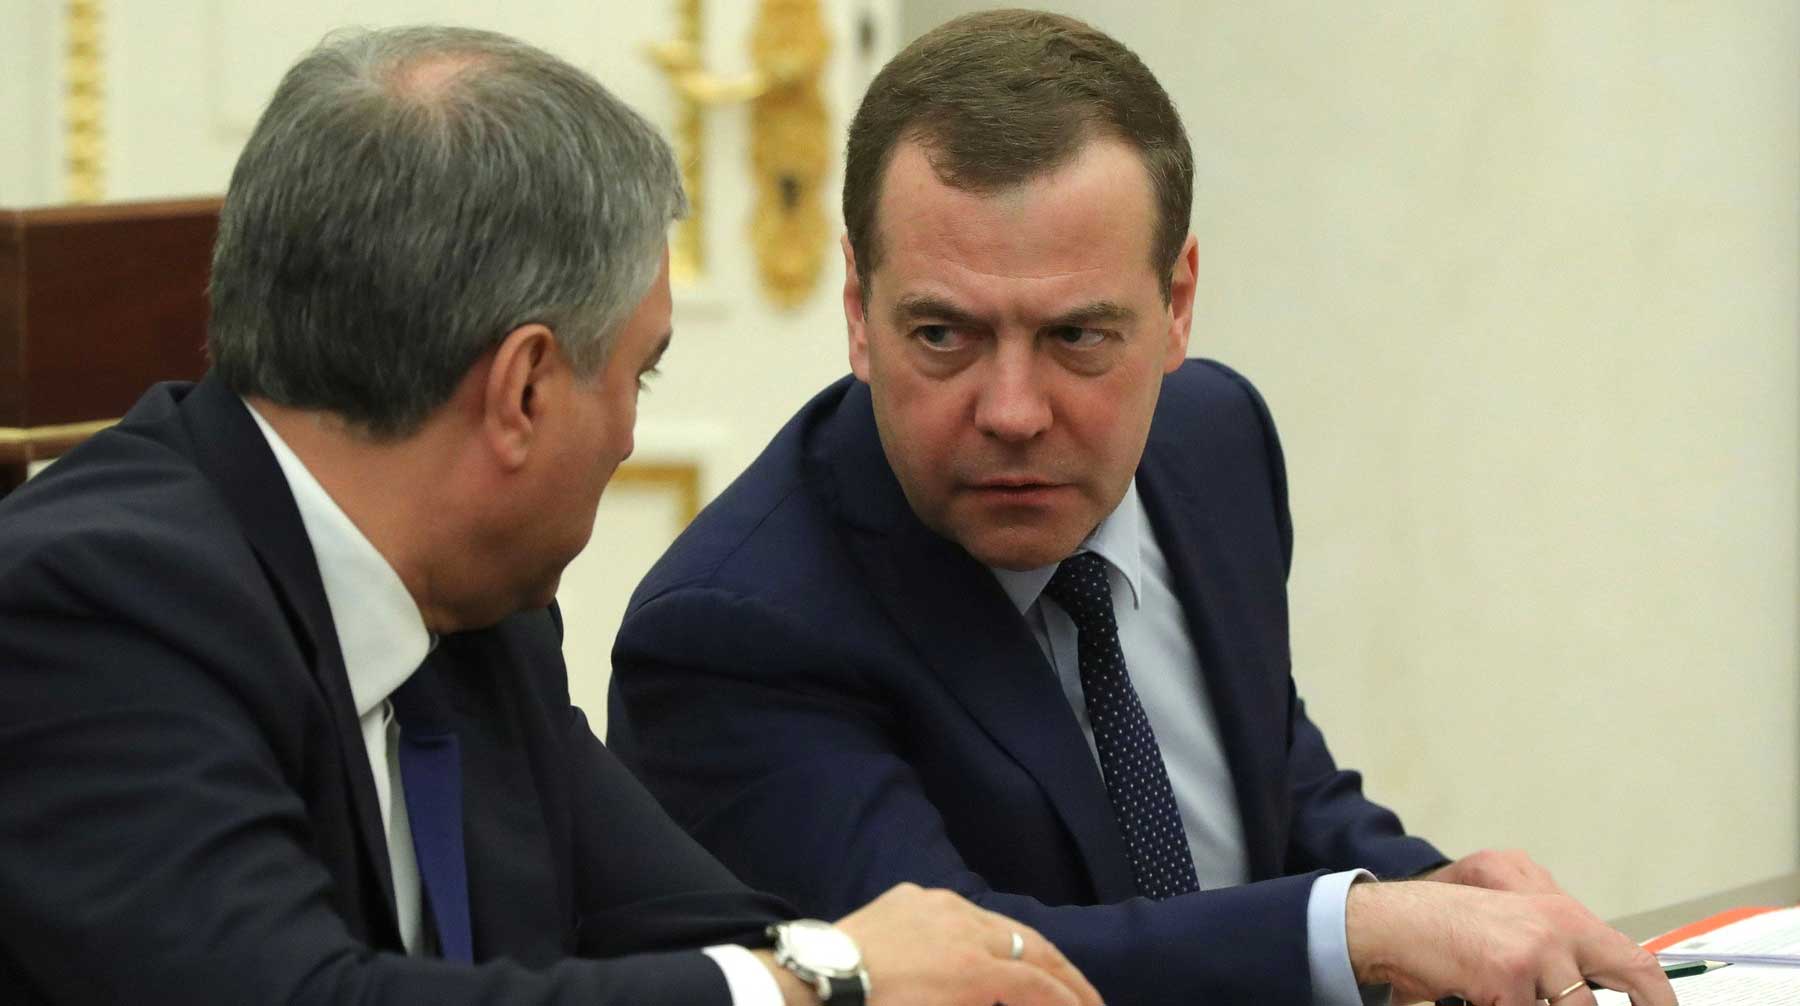 Также премьер в шутку заявил, что через 100 лет в России появятся министры-андроиды Фото: © GLOBAL LOOK press / Kremlin Pool